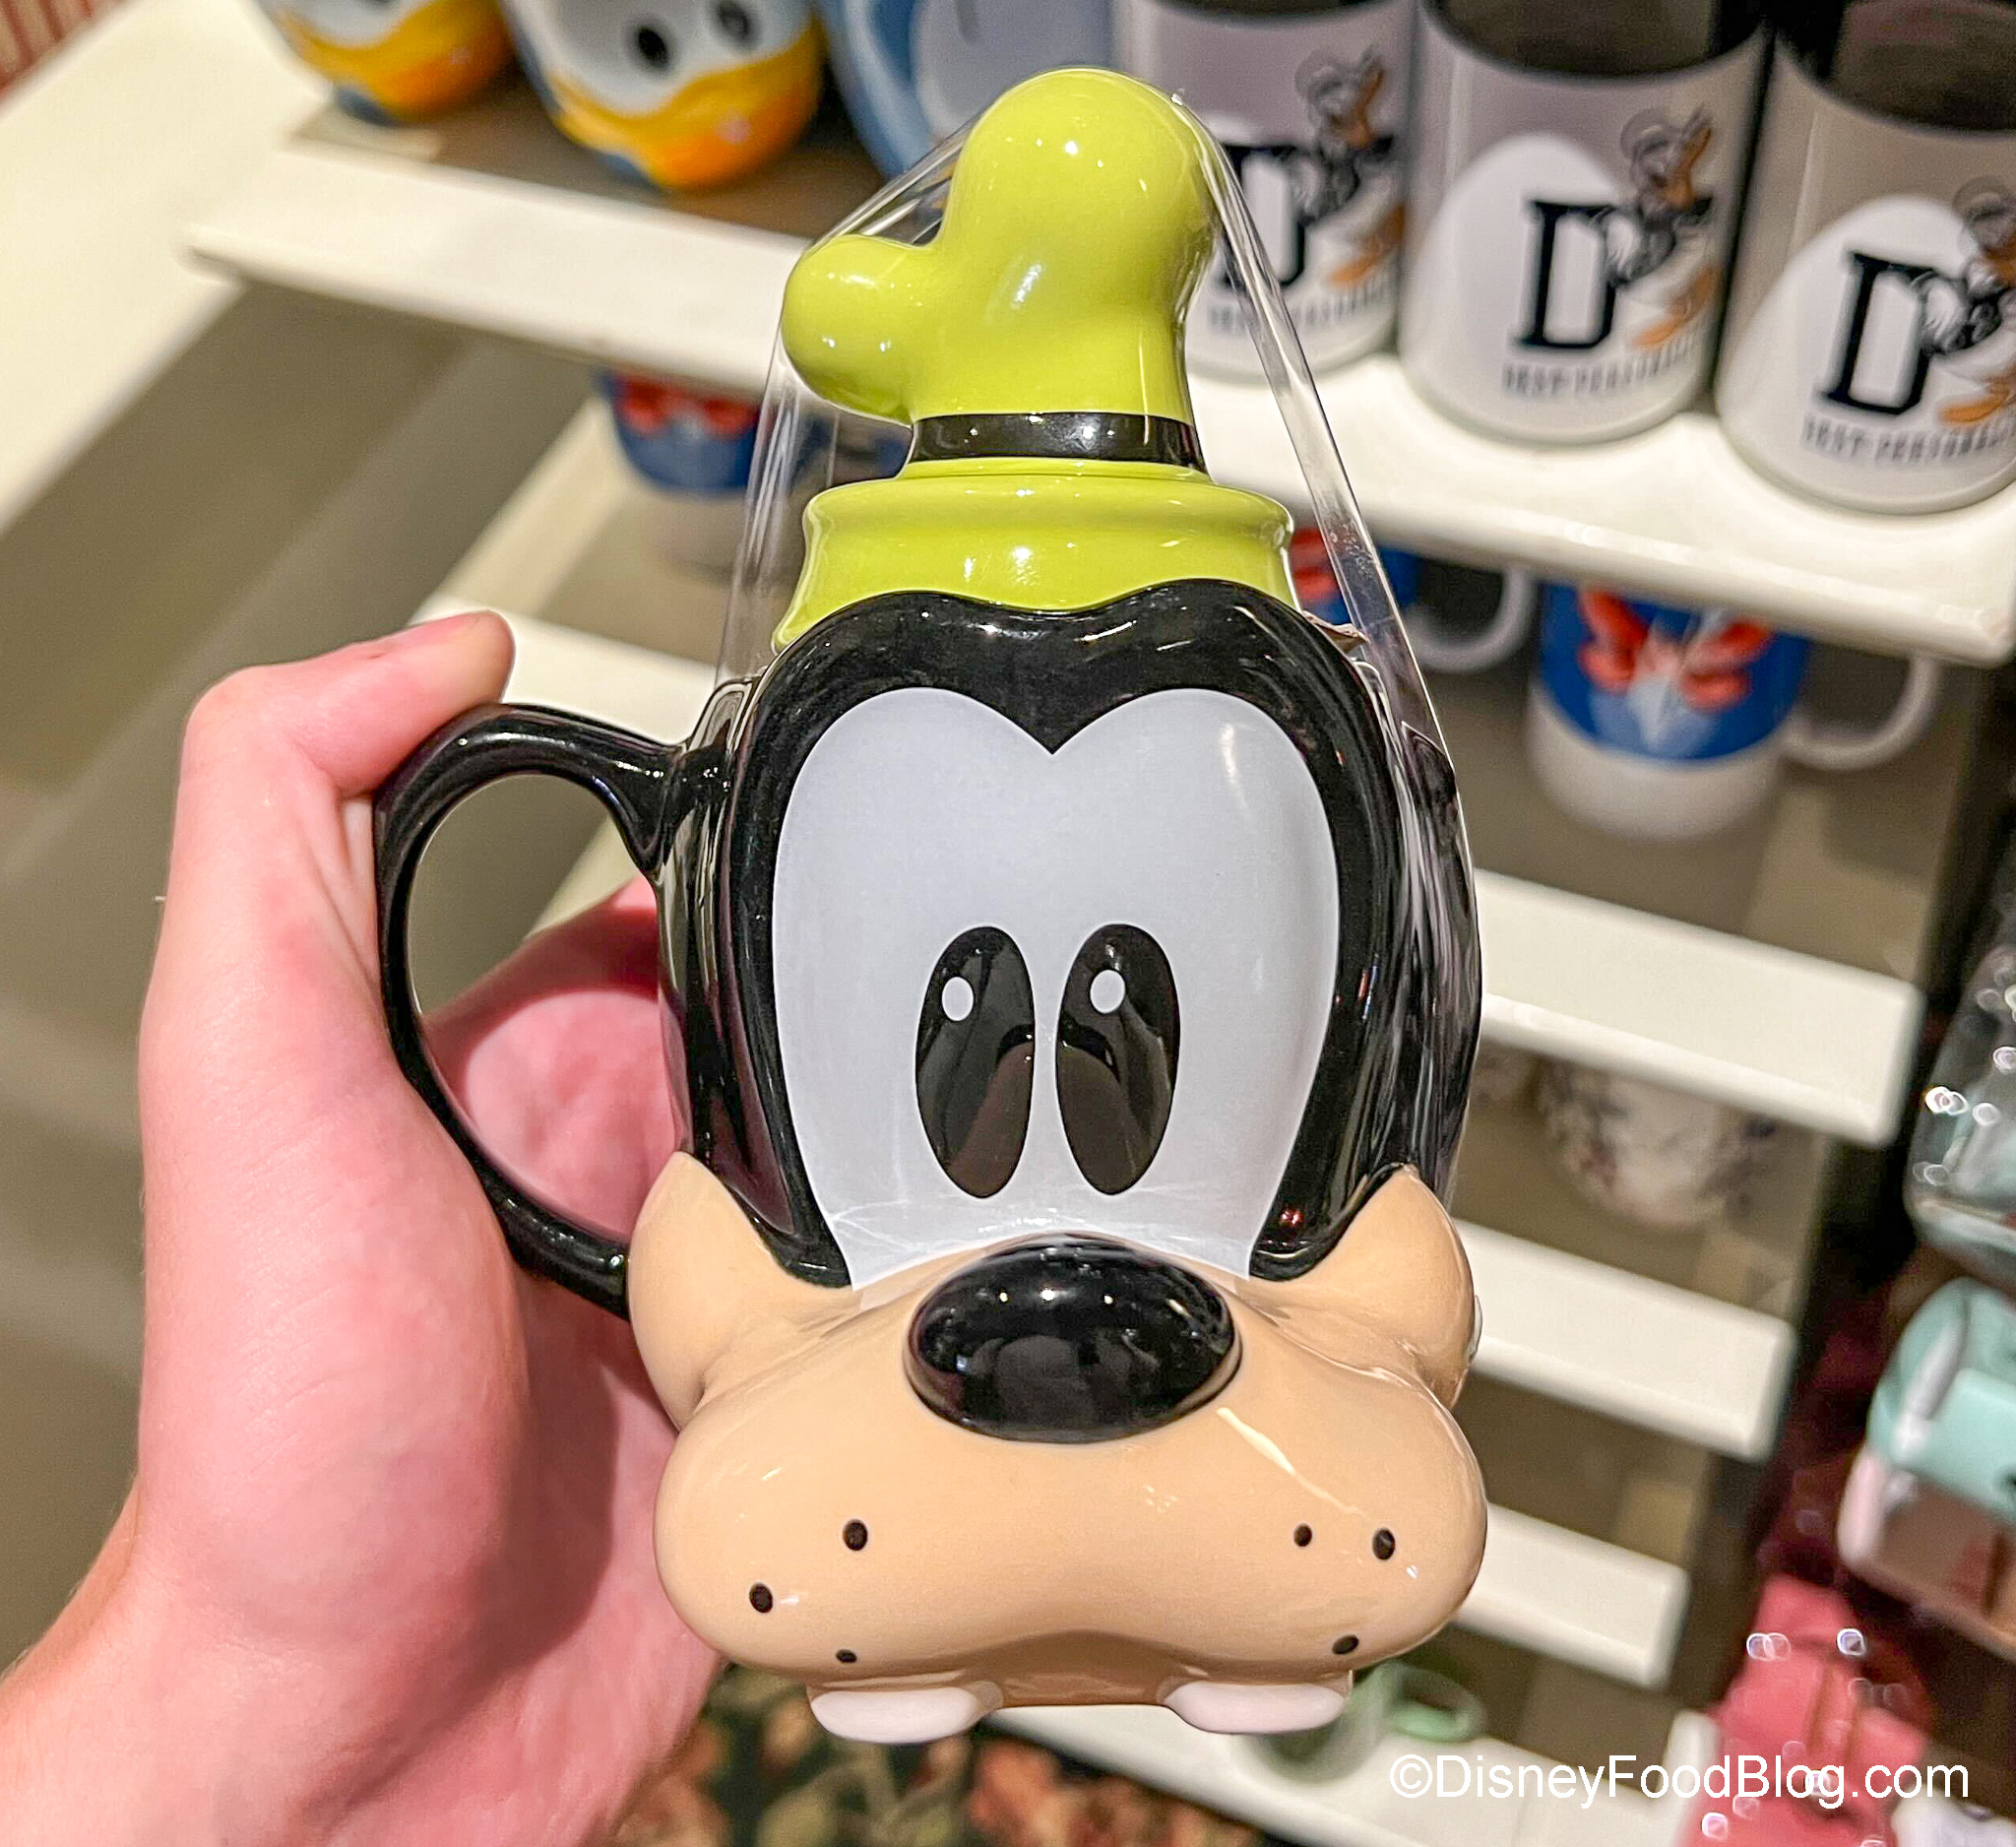 Disney Mug Goofy Disneyland Paris Disney